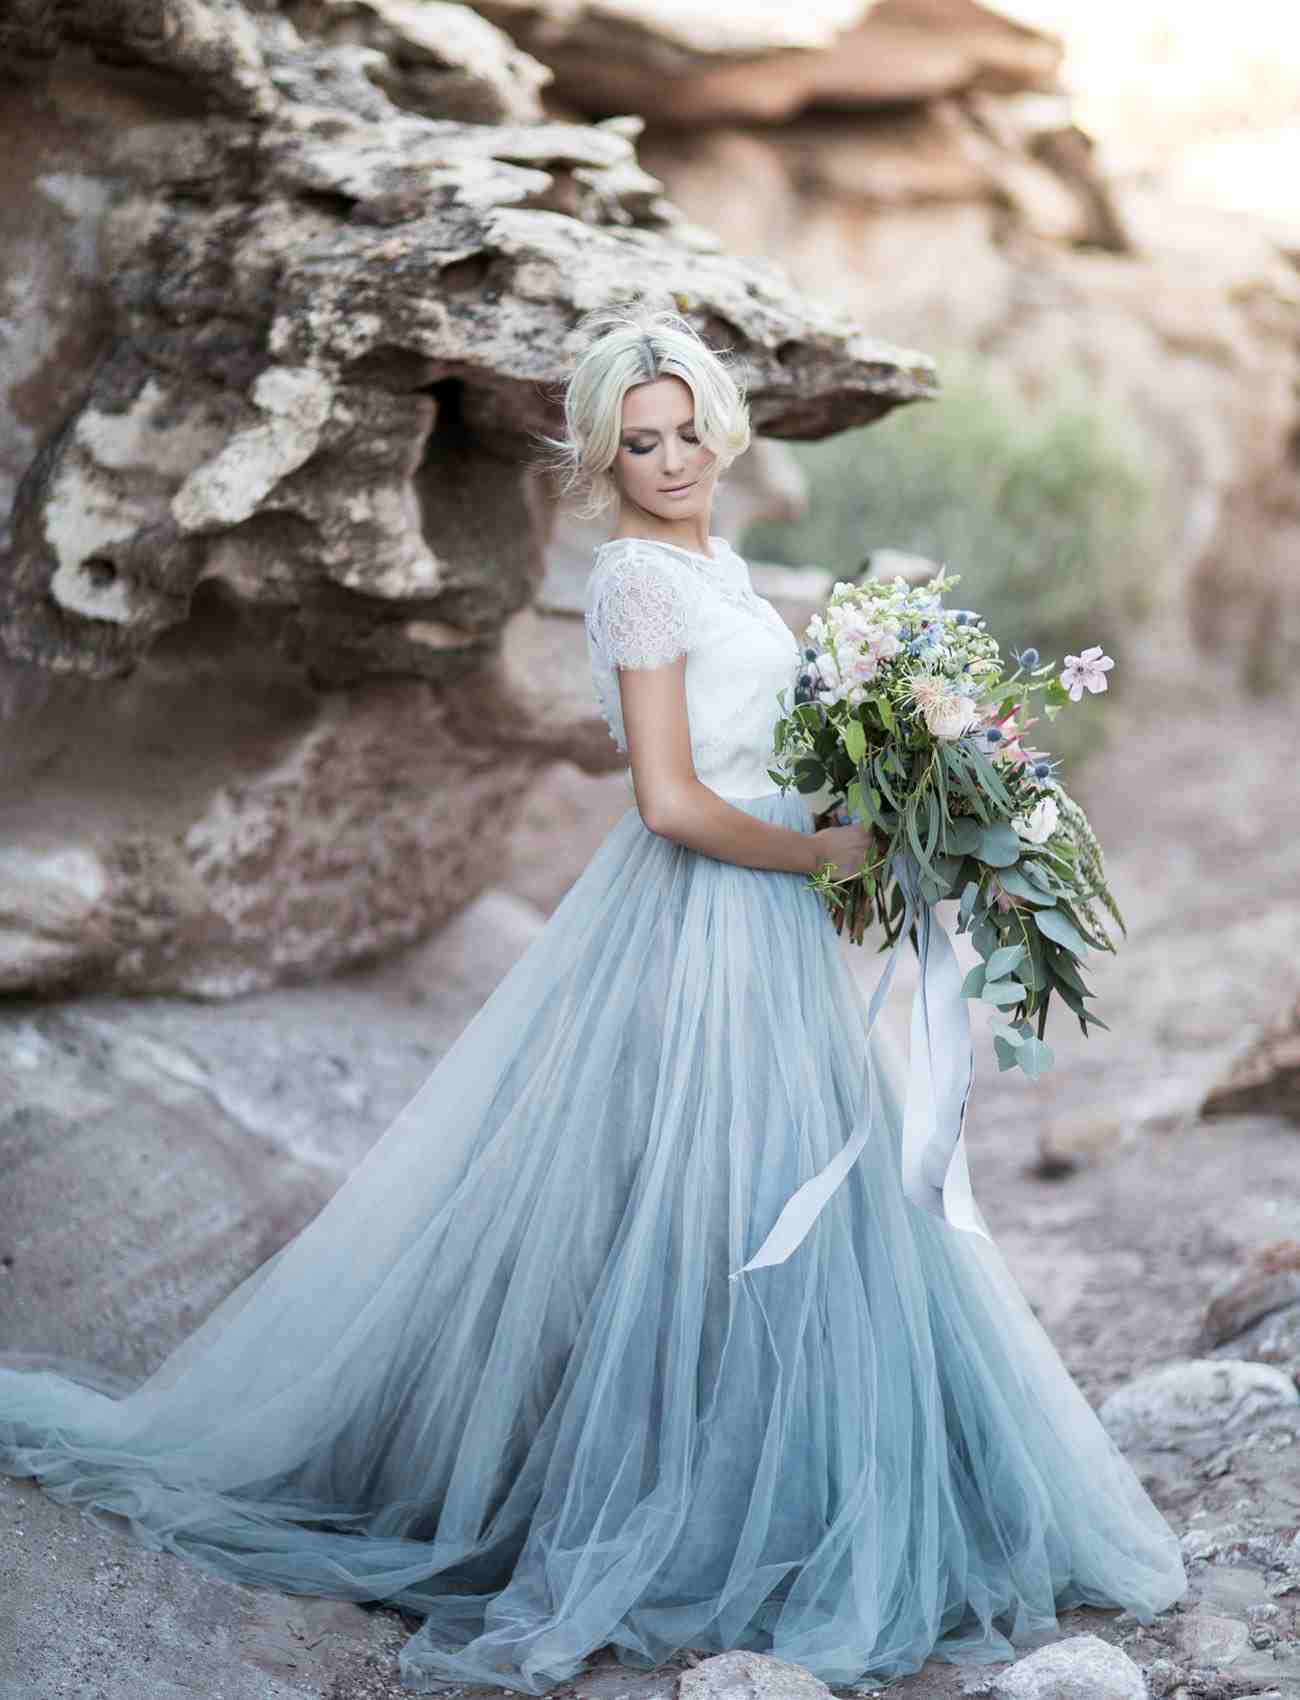 Lässige Brautkleider Blau Pastellfarben Hochzeit am Strand planen Blumenstrauss